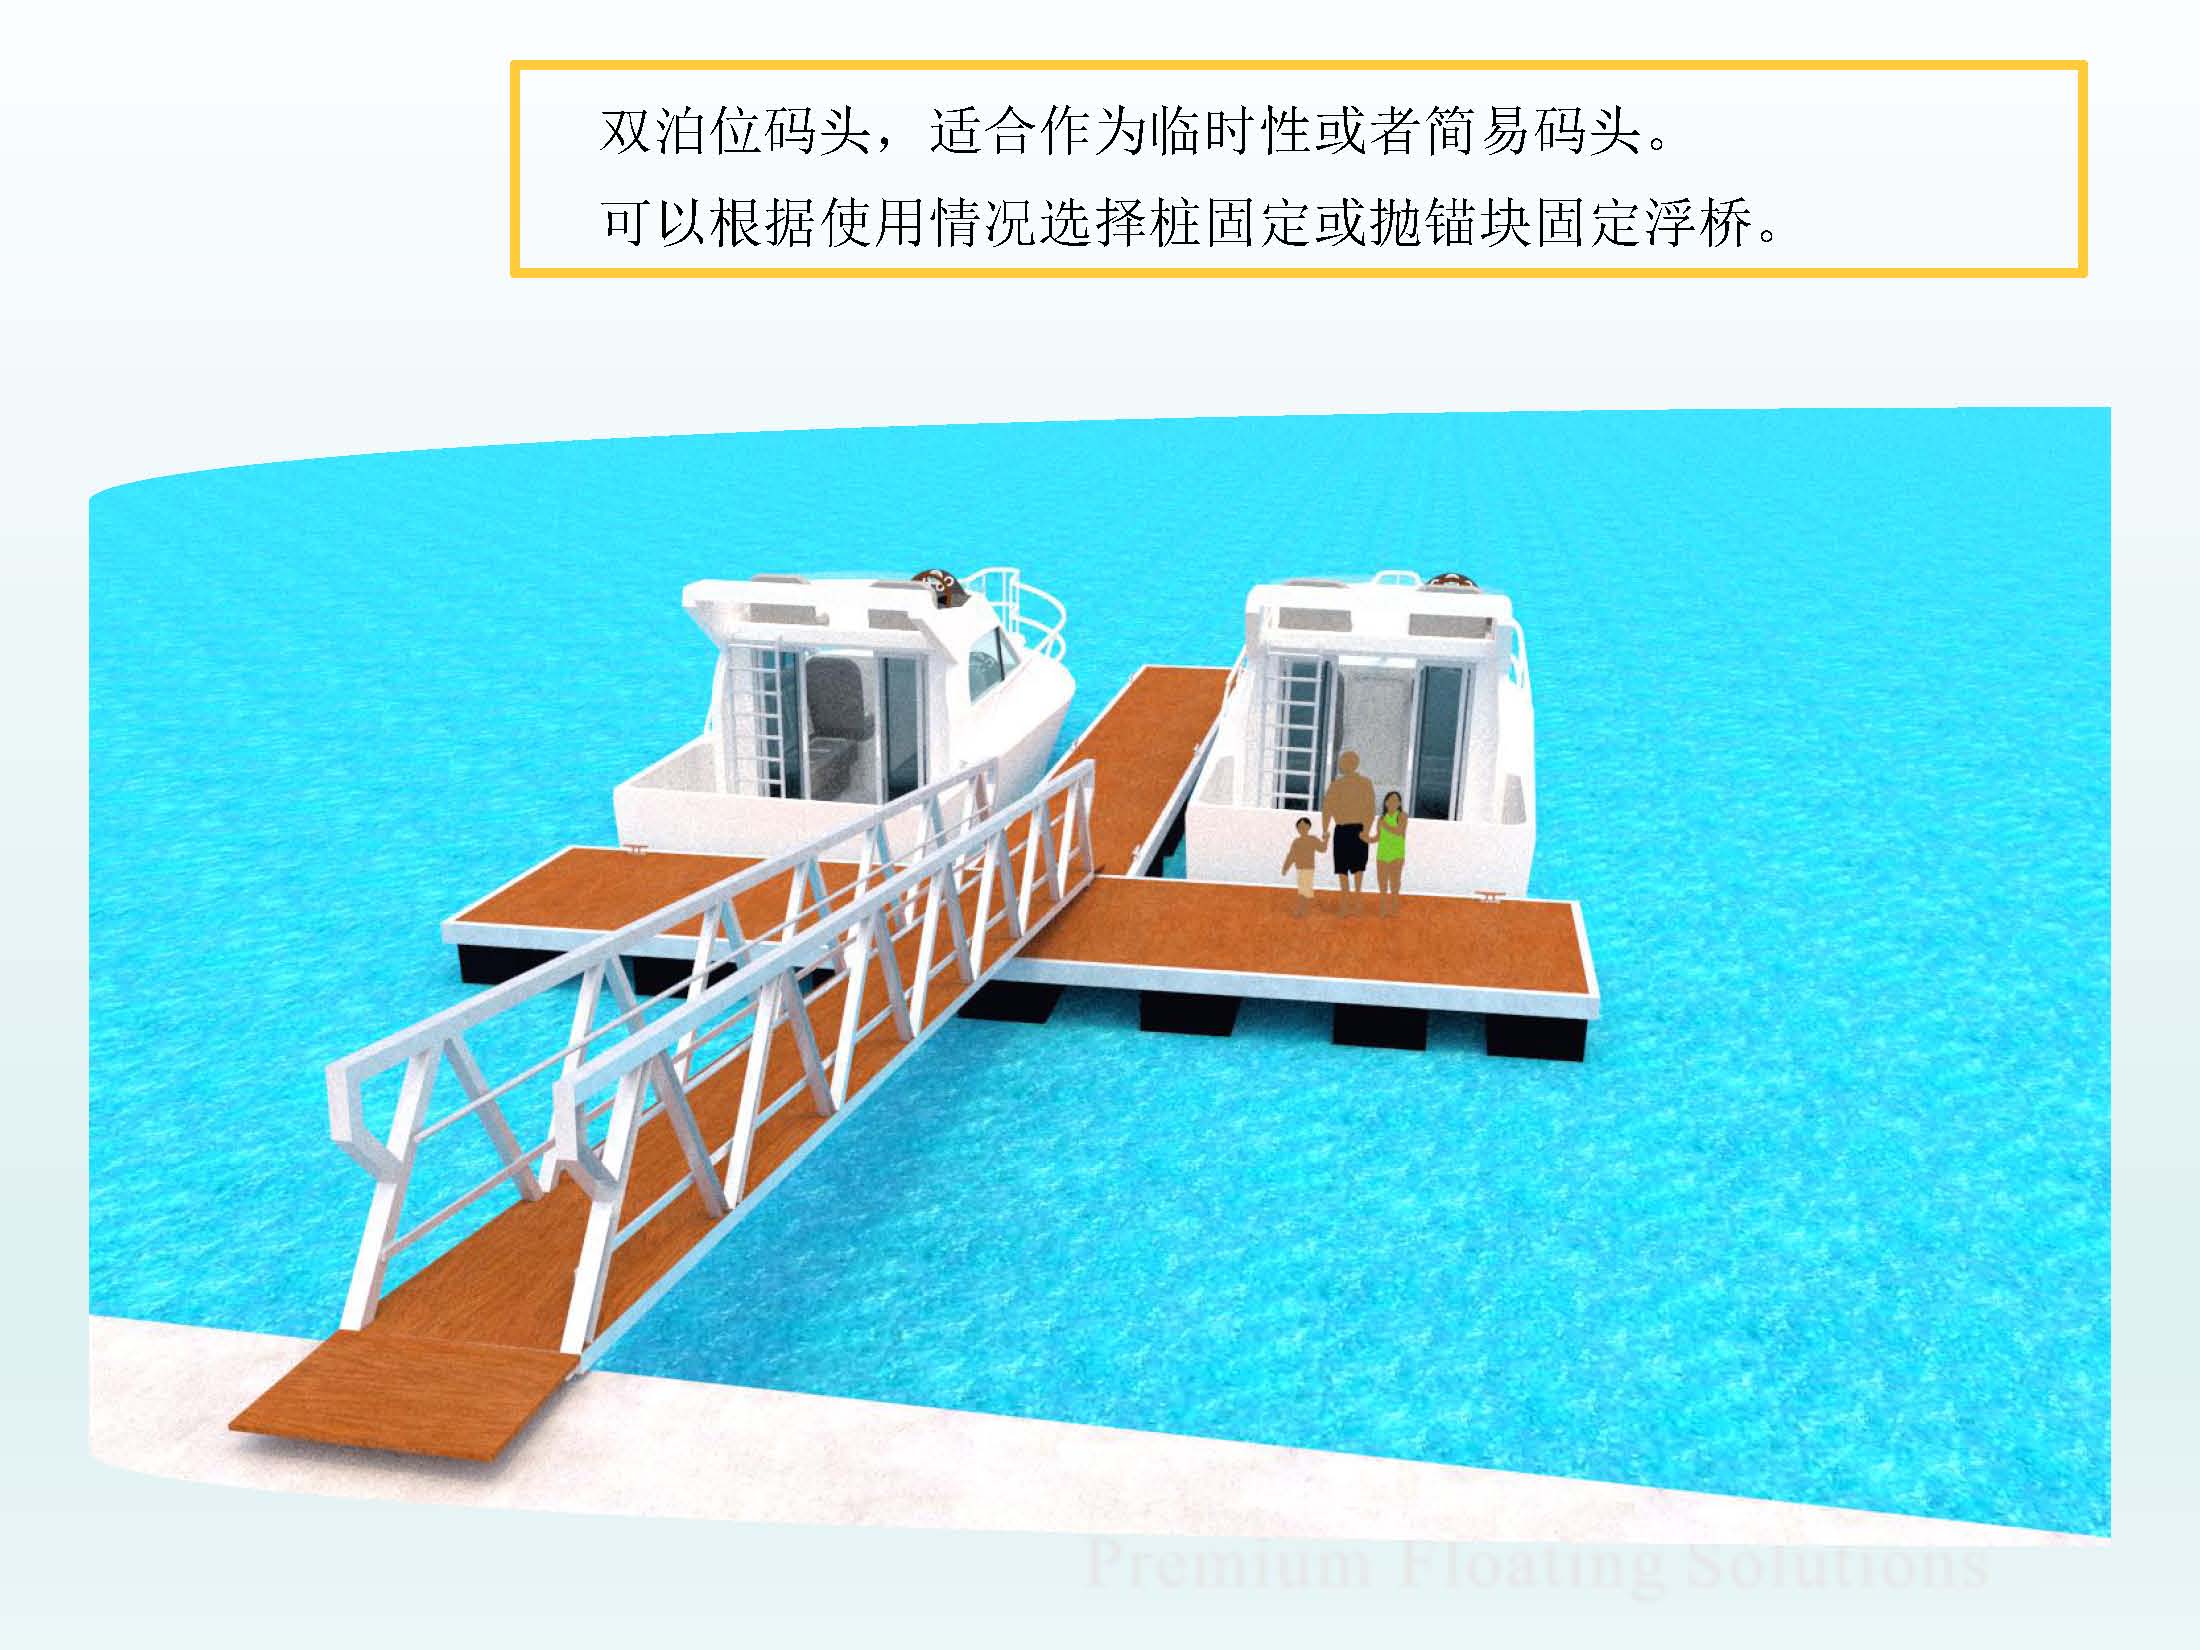 私人码头（单泊位码头） – 广州蓝正游艇码头工程有限公司